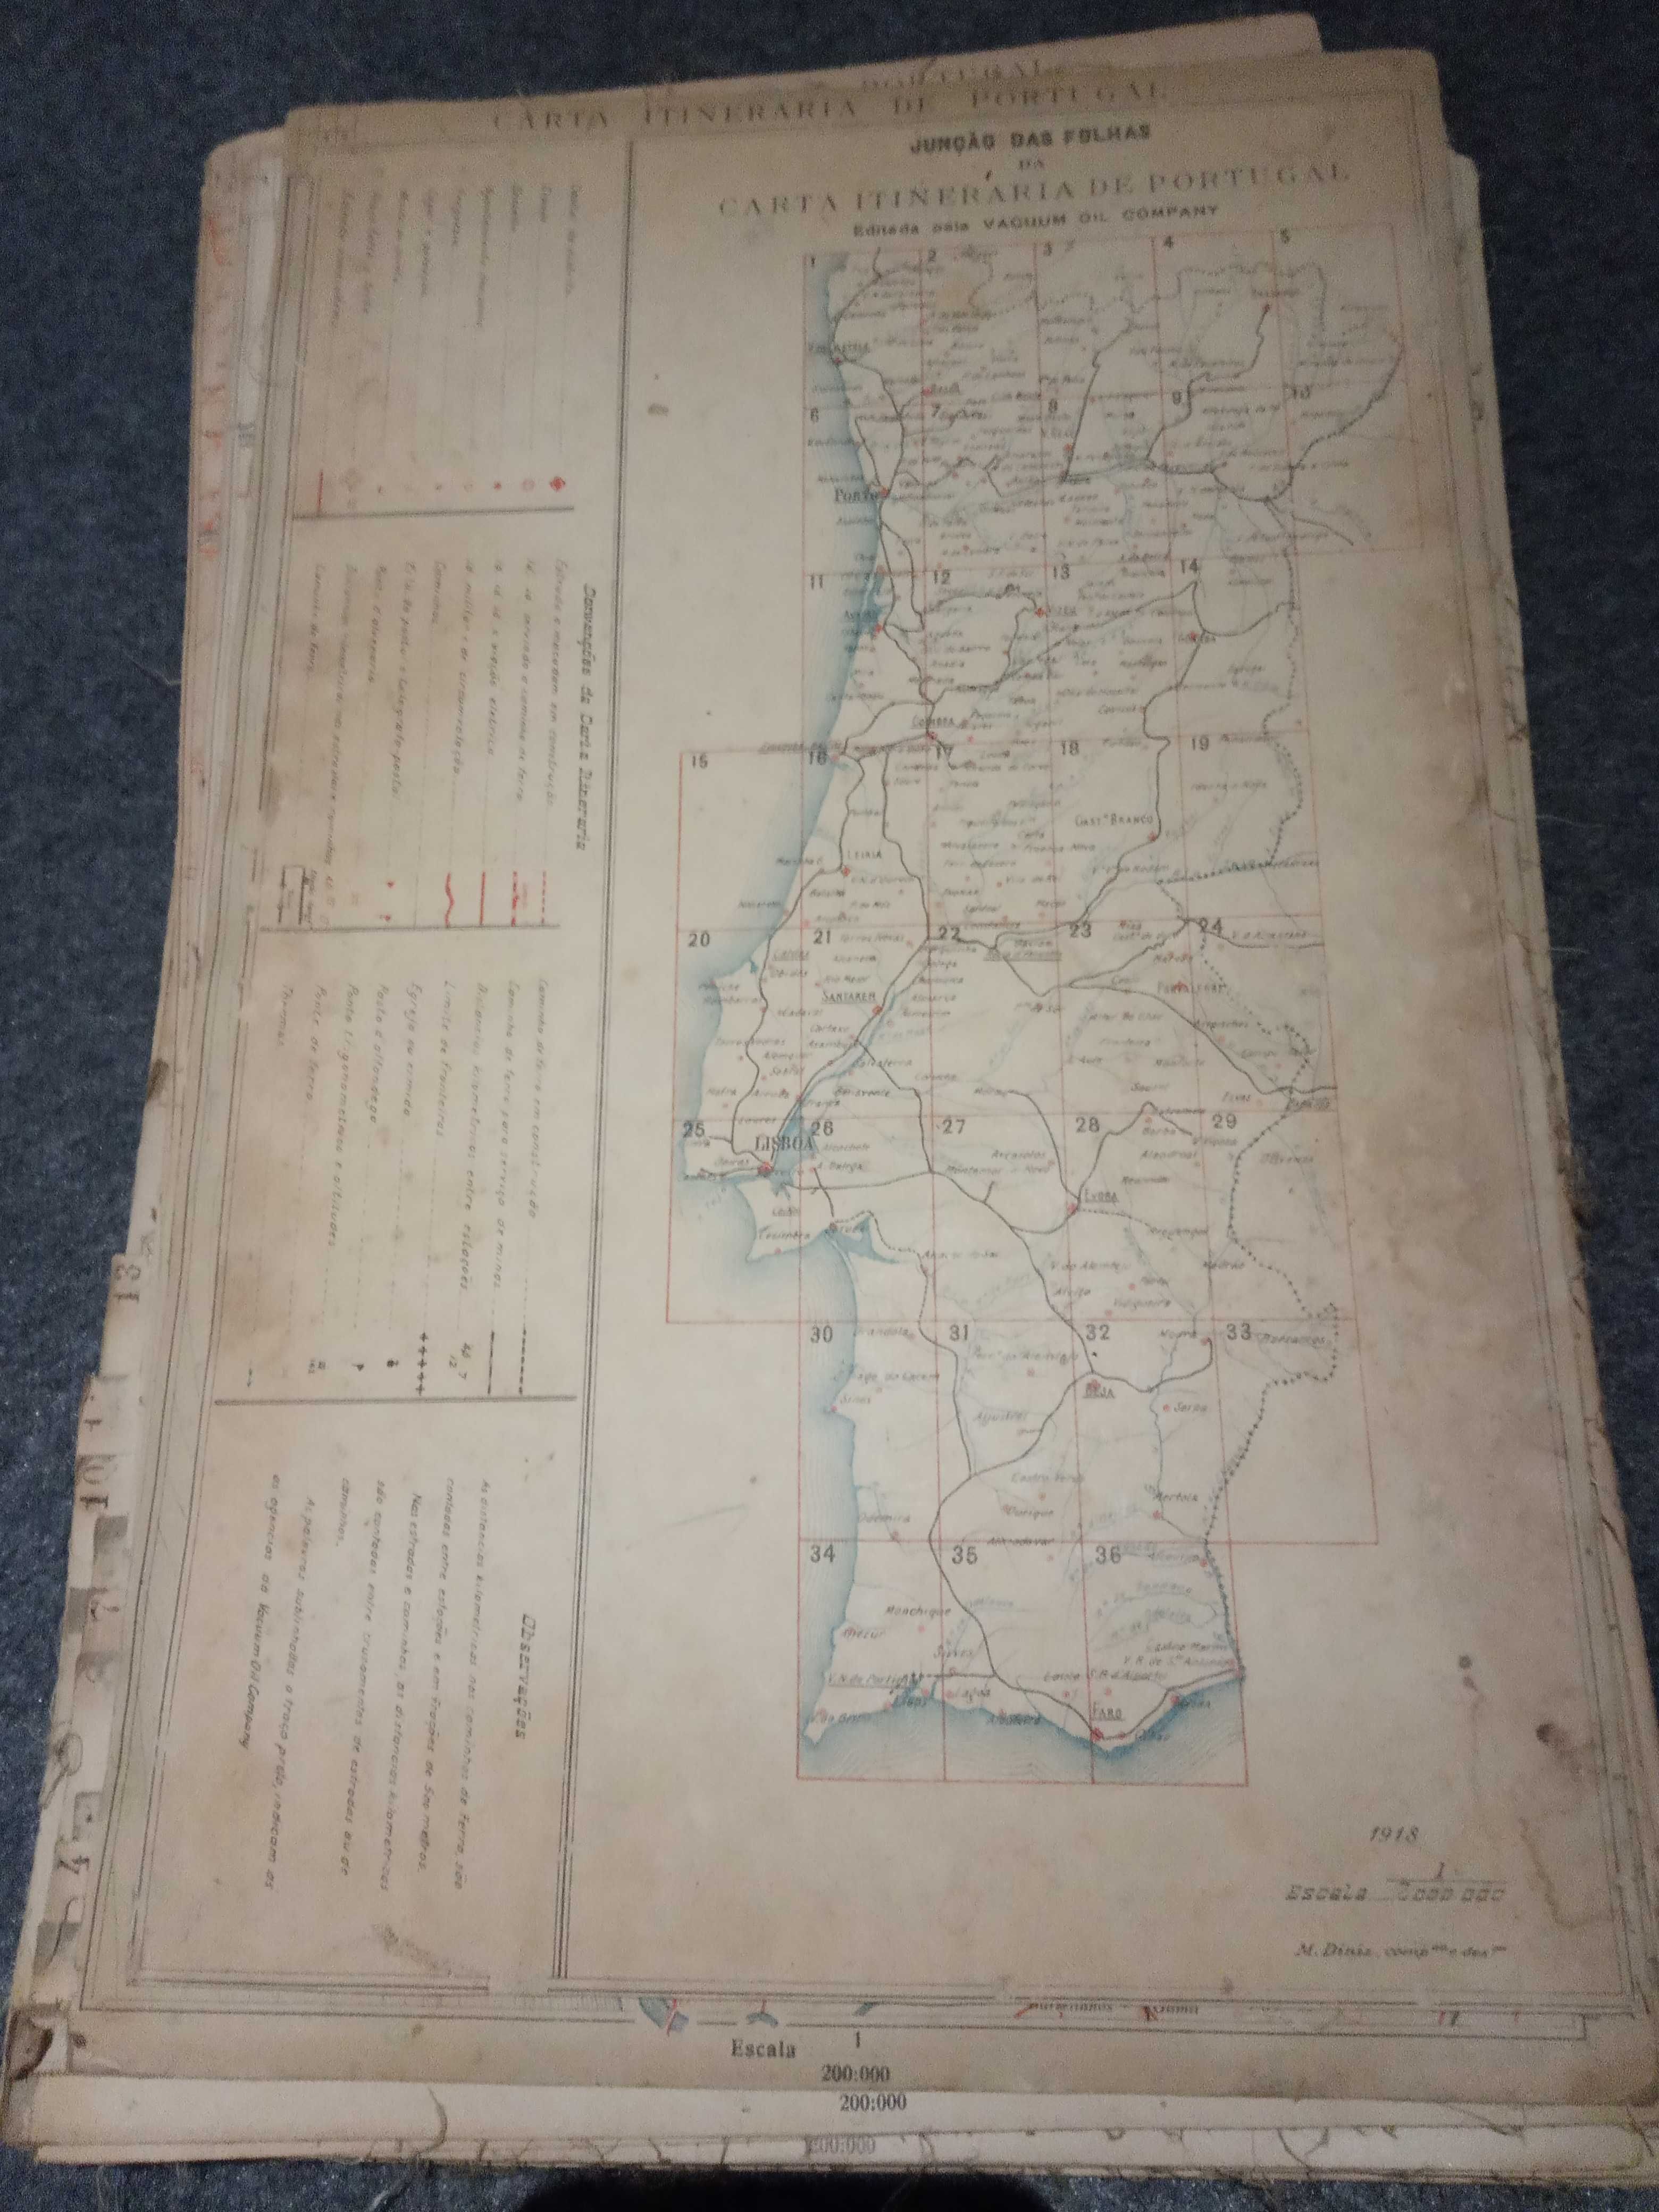 Carta Itinerária (Mapa) de Portugal - 1918 - Auto-Gazo - Mobiloils